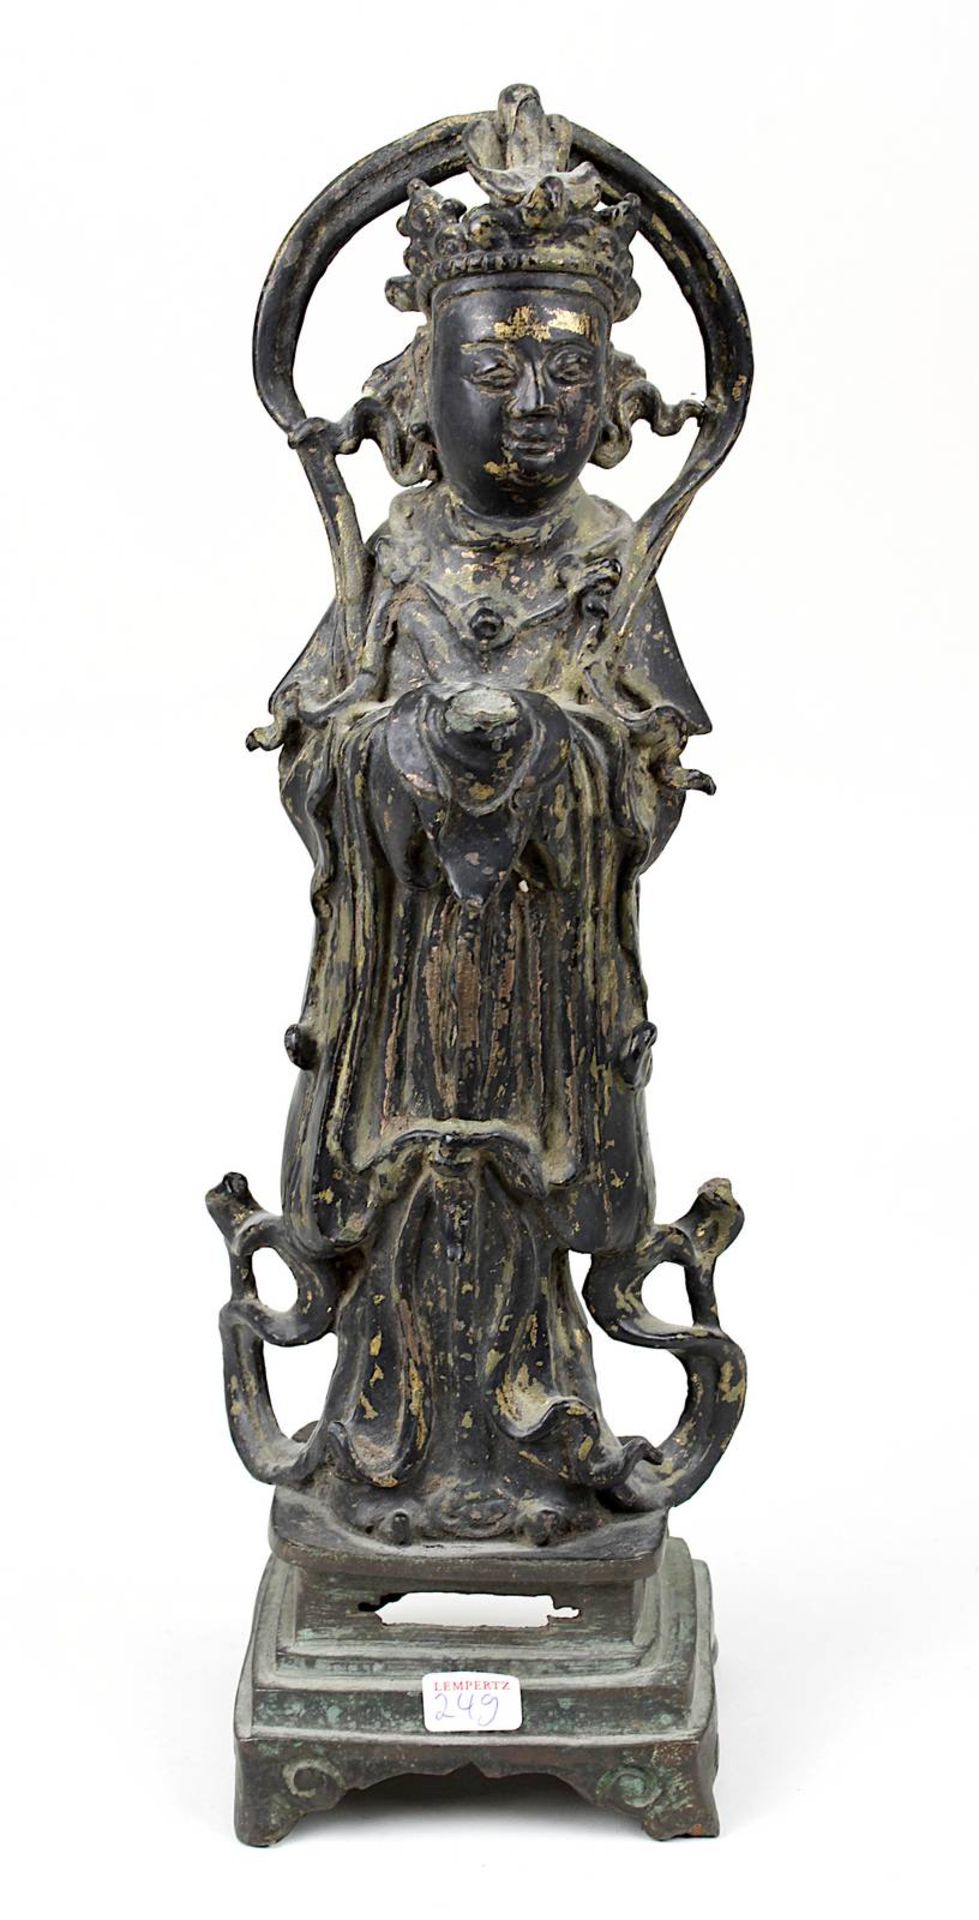 Stehende Figur der Xi Wang Mu, Bronze, China wohl 16./17. Jh., Bronze mit Resten von Vergoldung, die